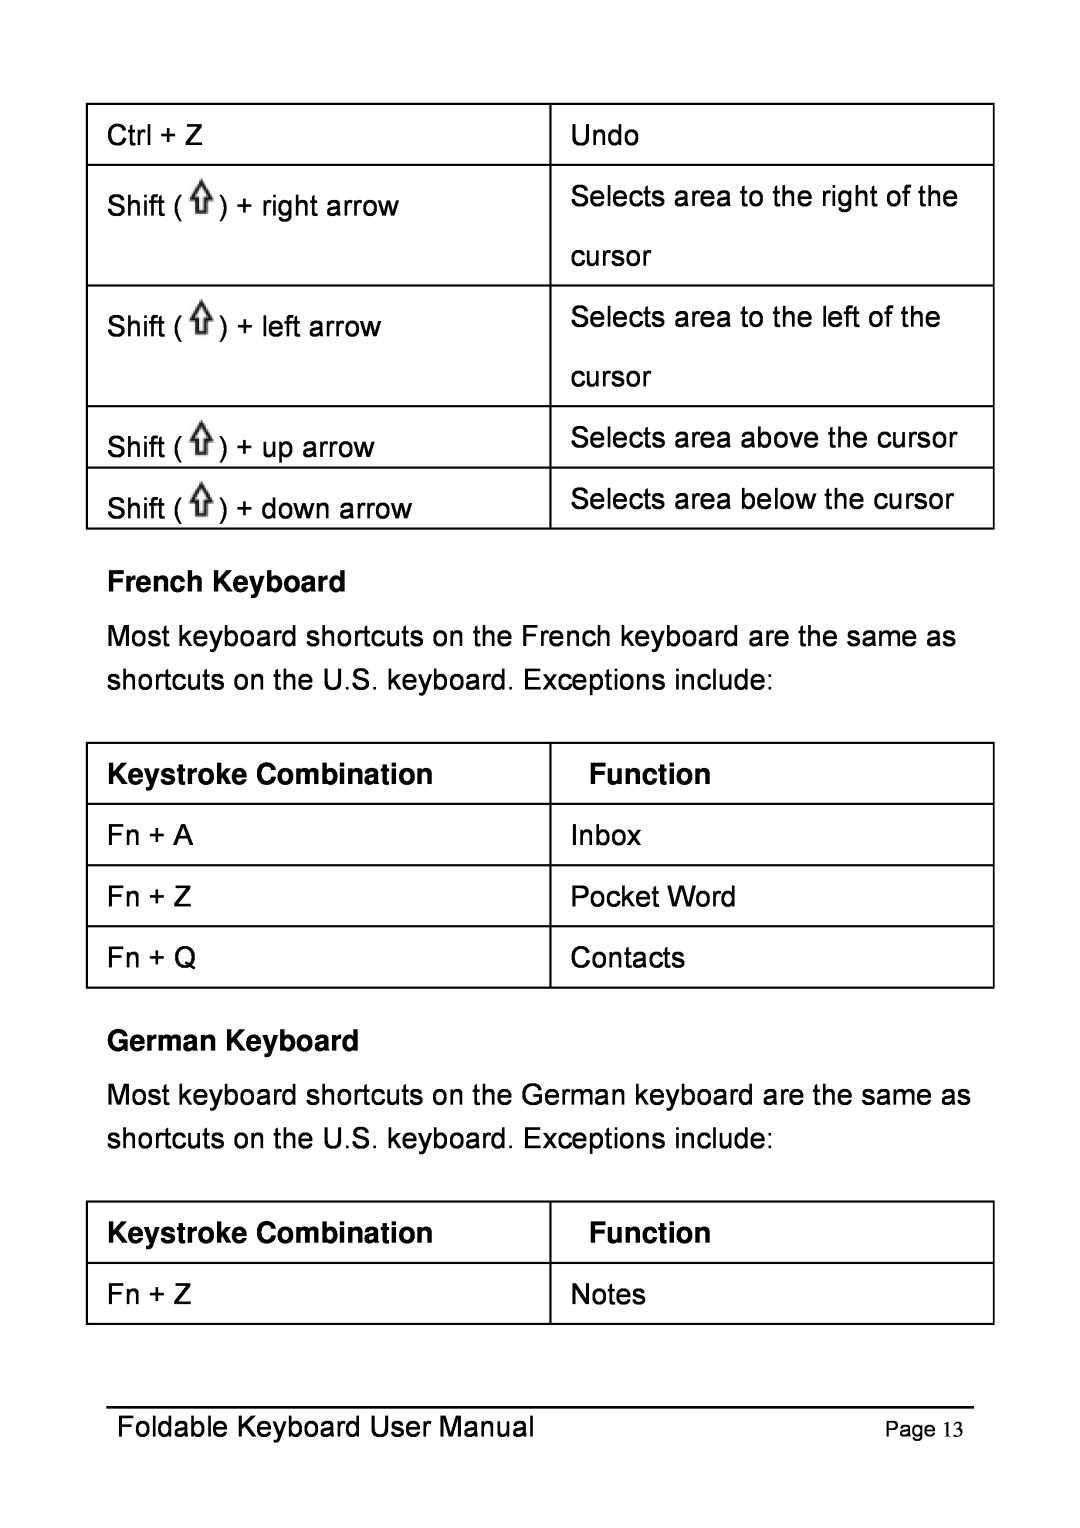 Dell Foldable Keyboard for Pocket PC user manual French Keyboard, Keystroke Combination, Function, German Keyboard, Fn + Z 